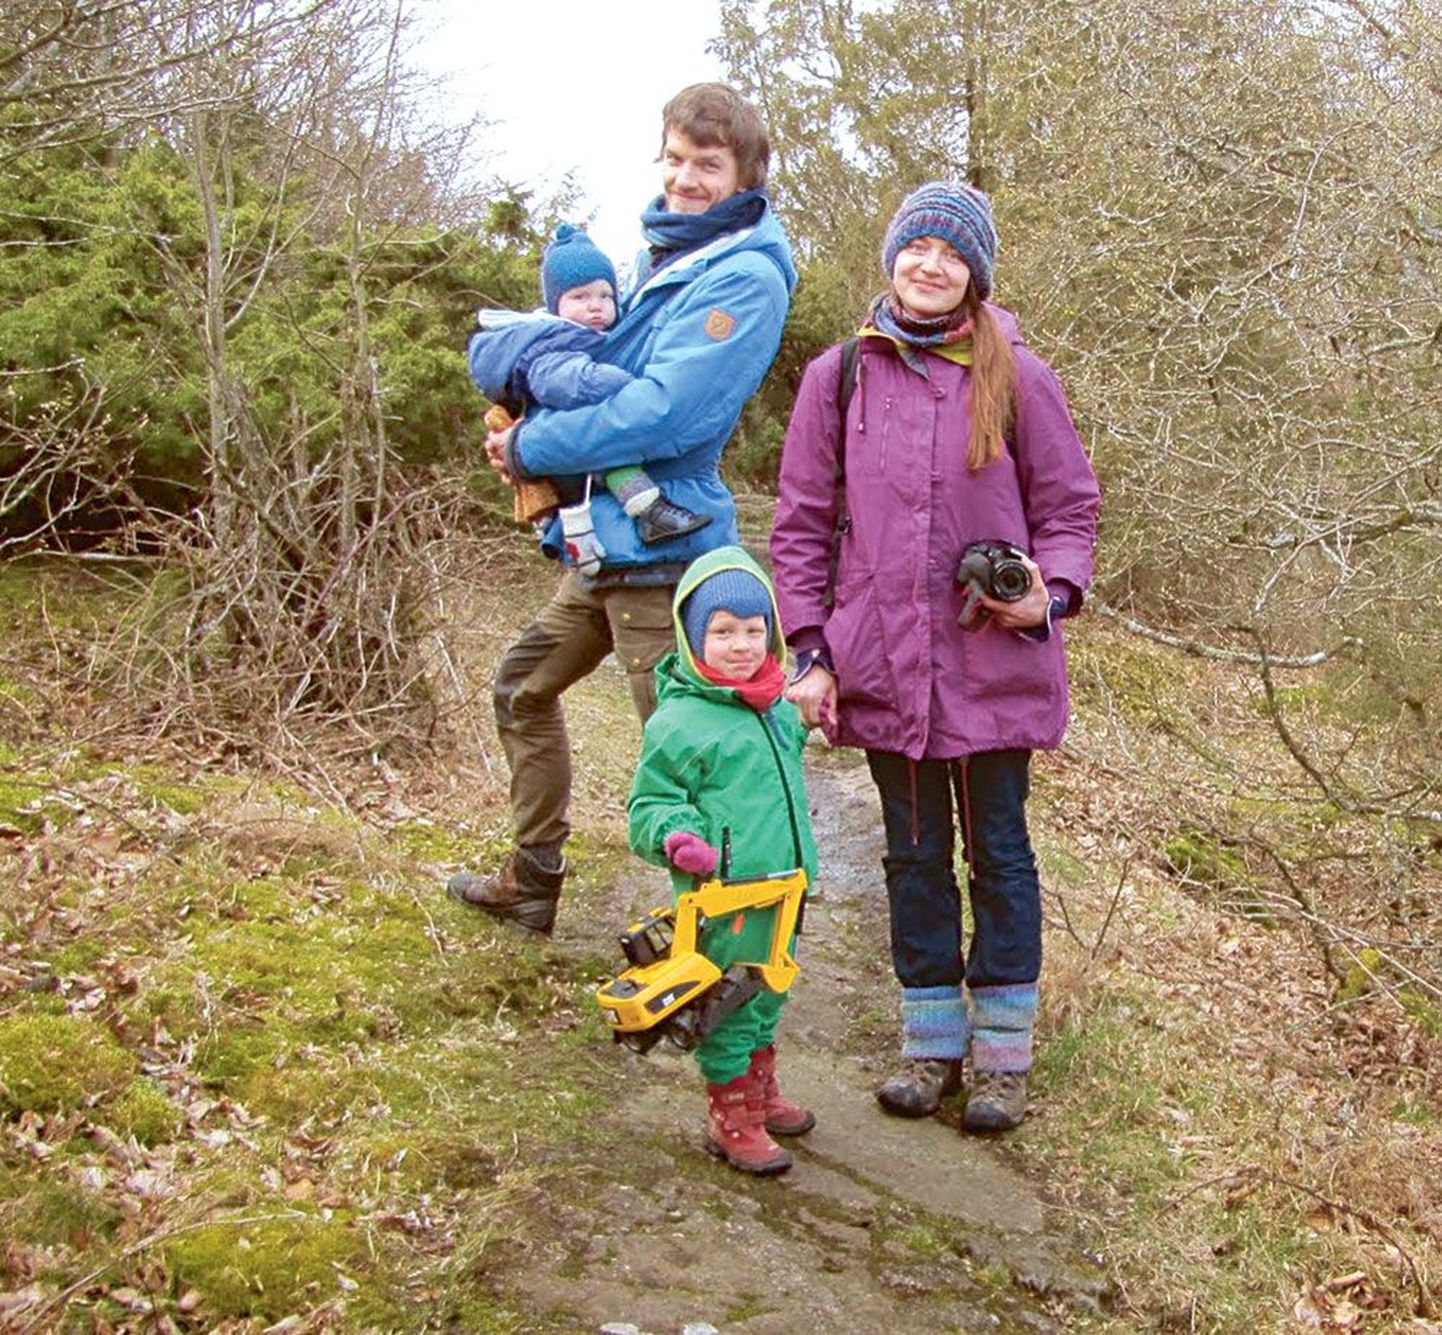 Marian Hiire ja Mihkel Nummert, 
kelle peres kasvavad peagi 3-aastaseks
saav Laurits ja 9-kuune Koit, elavad praegu veel pereisa magistriõpingute
tõttu Rootsis, kuid peagi Eestisse naastes kavatseb pere end sisse seada
just maal.